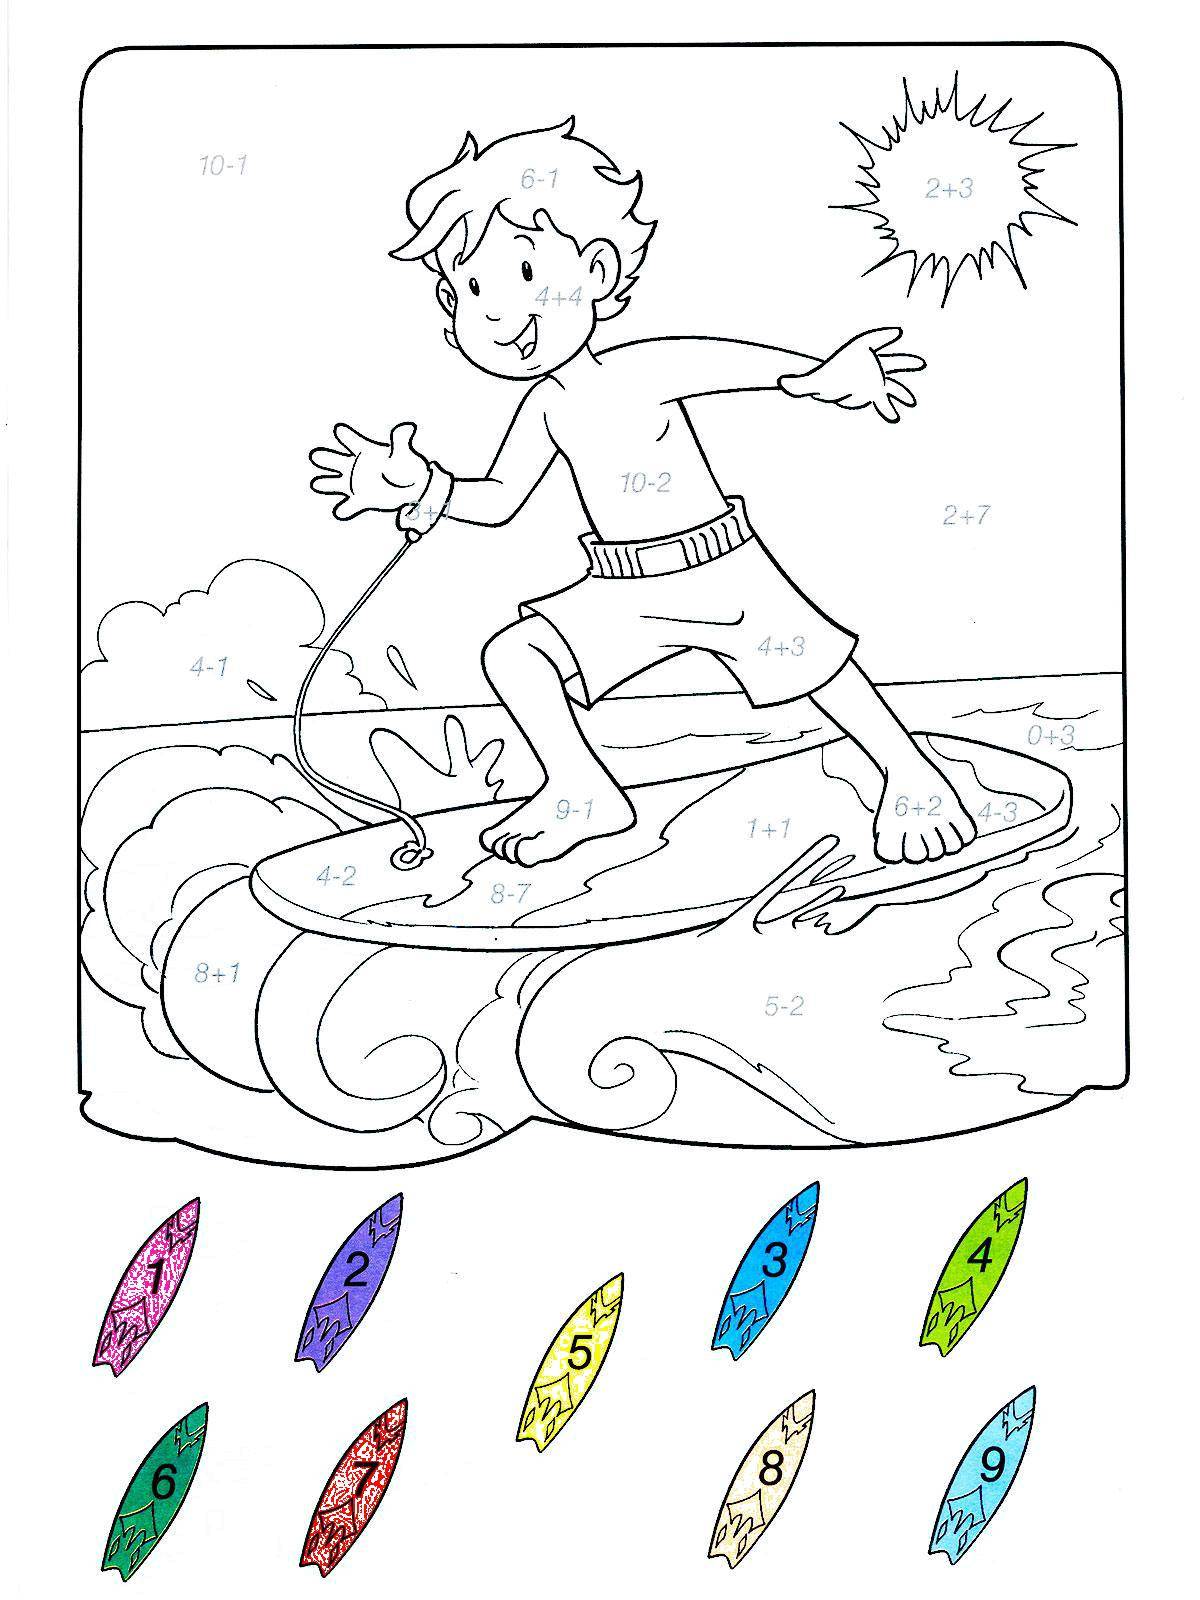  раскраски на тему серфинг для детей и взрослых. Интересные раскраски для мальчиков и девочек. Море, доска для серфинга, волны, пляж          